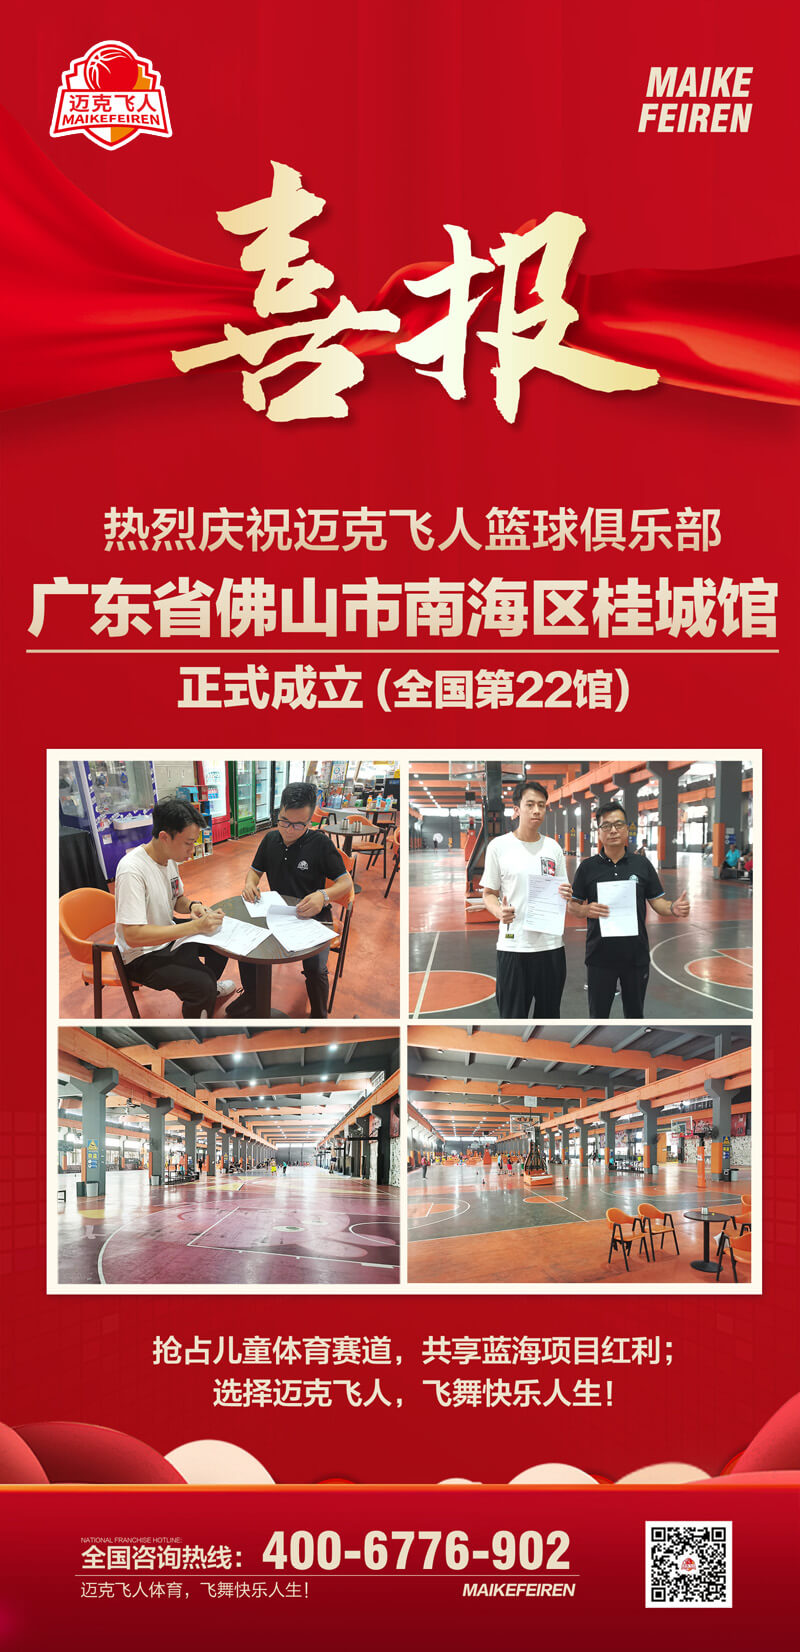 篮球加盟喜报：迈克飞人篮球俱乐部广东佛山南海区桂城馆正式成立